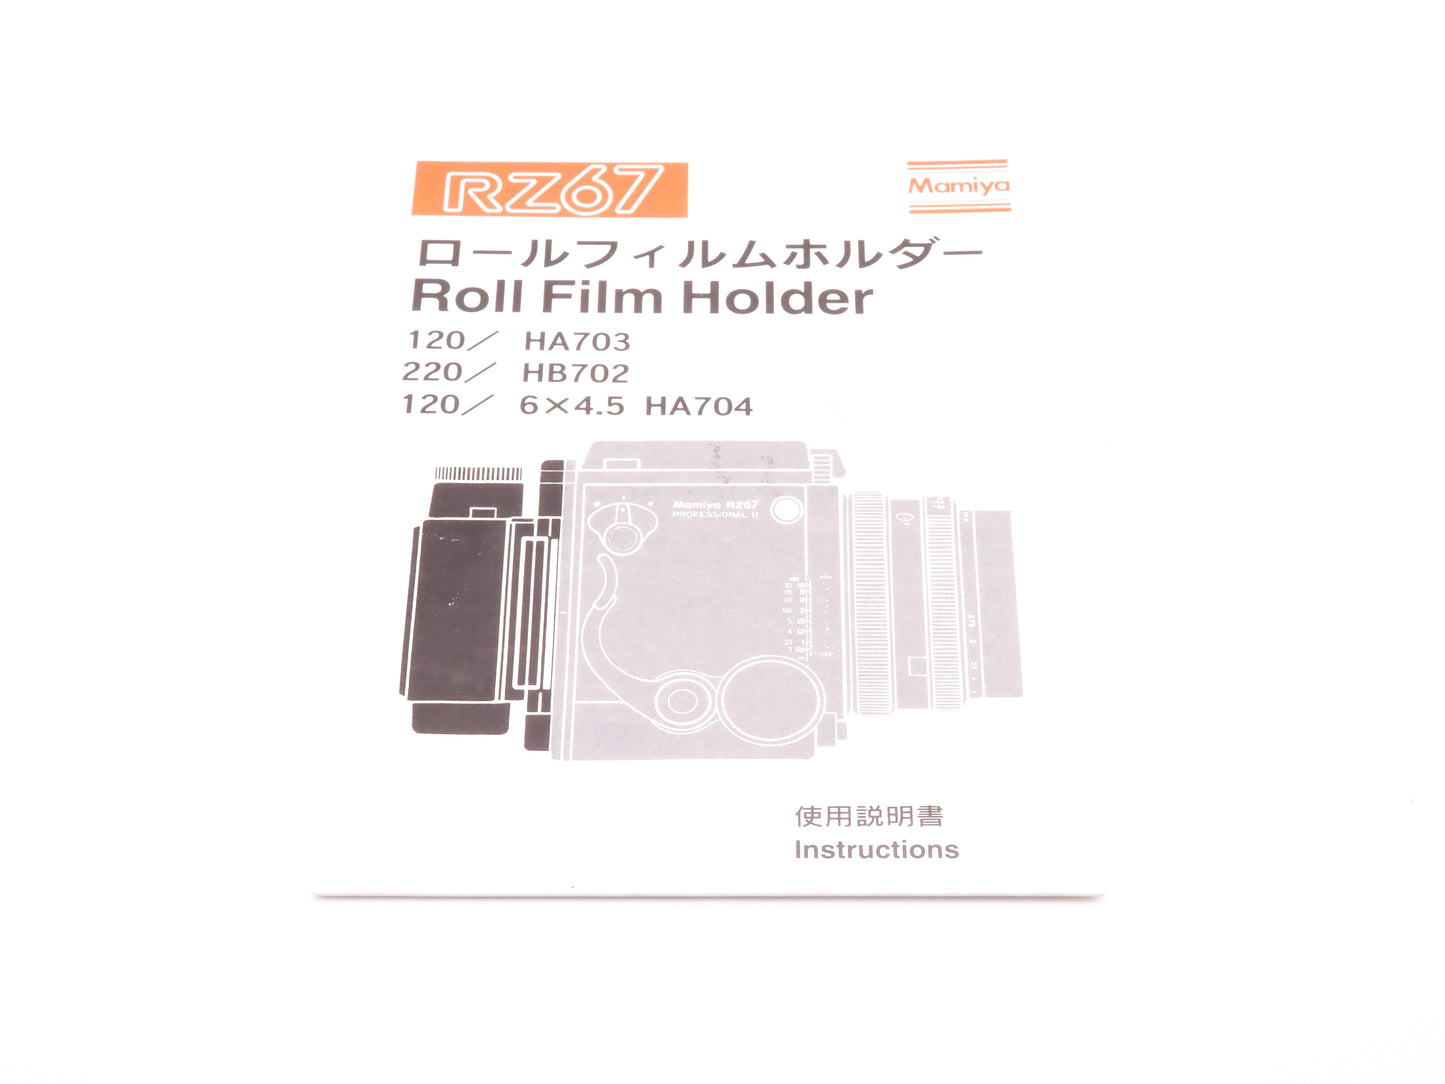 Mamiya RZ67 Roll Film Holder Instructions